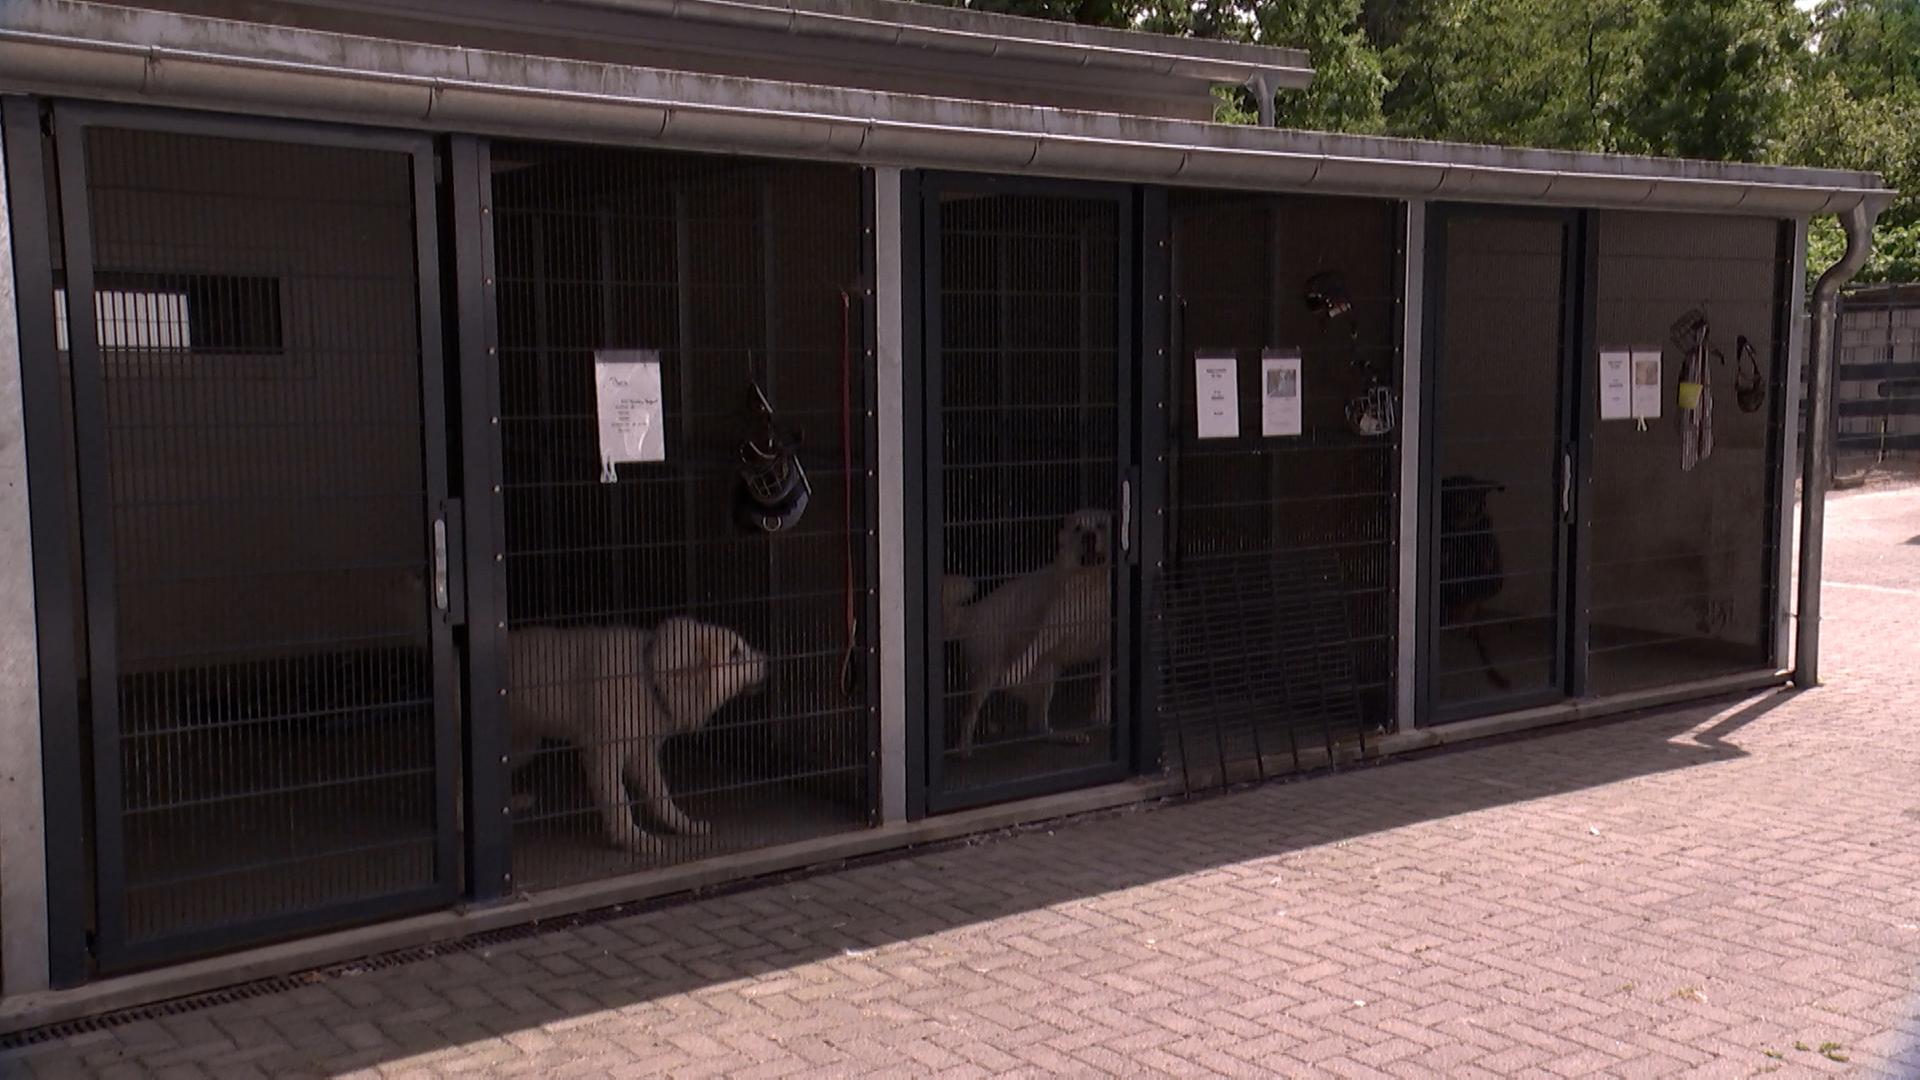 Zwei Hunde sind in einen großen Käfig eingesperrt.